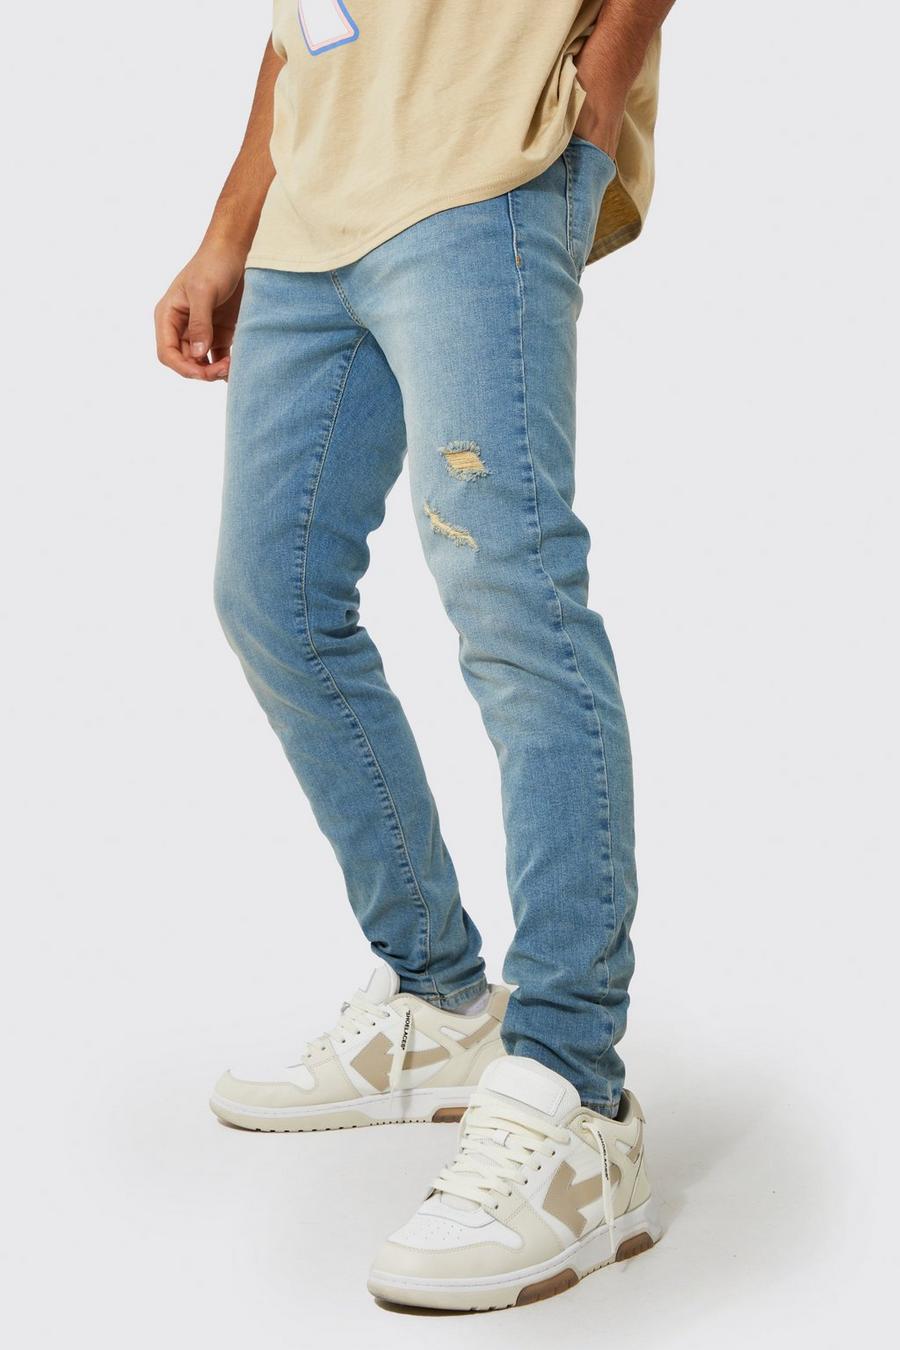 כחול וינטג' azul סקיני ג'ינס נמתח עם קרעים